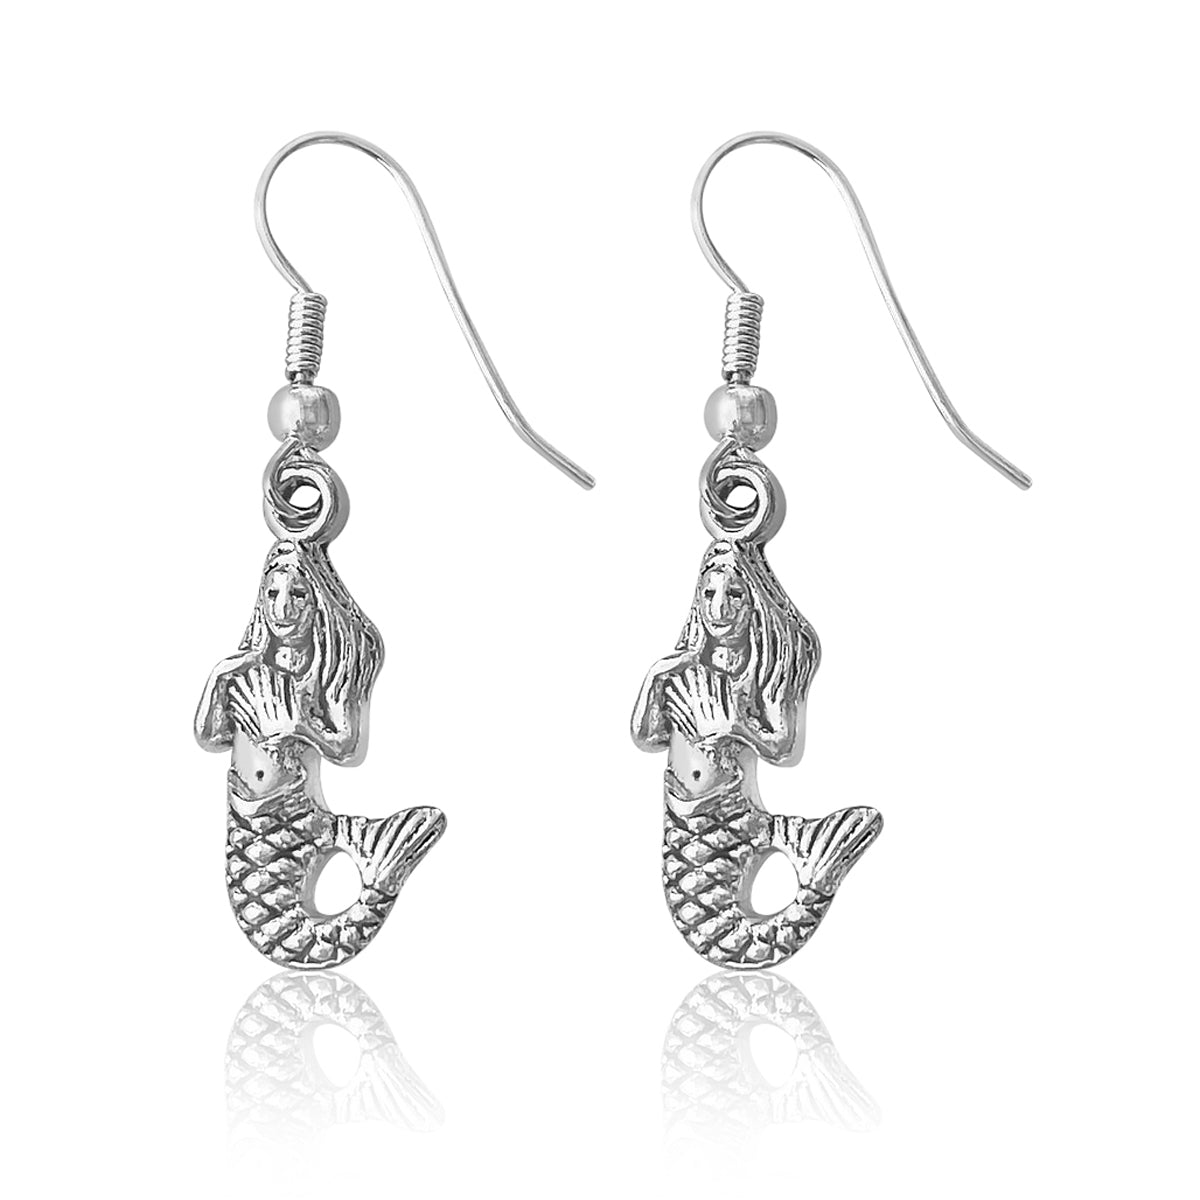 Mermaid Earrings for Kids